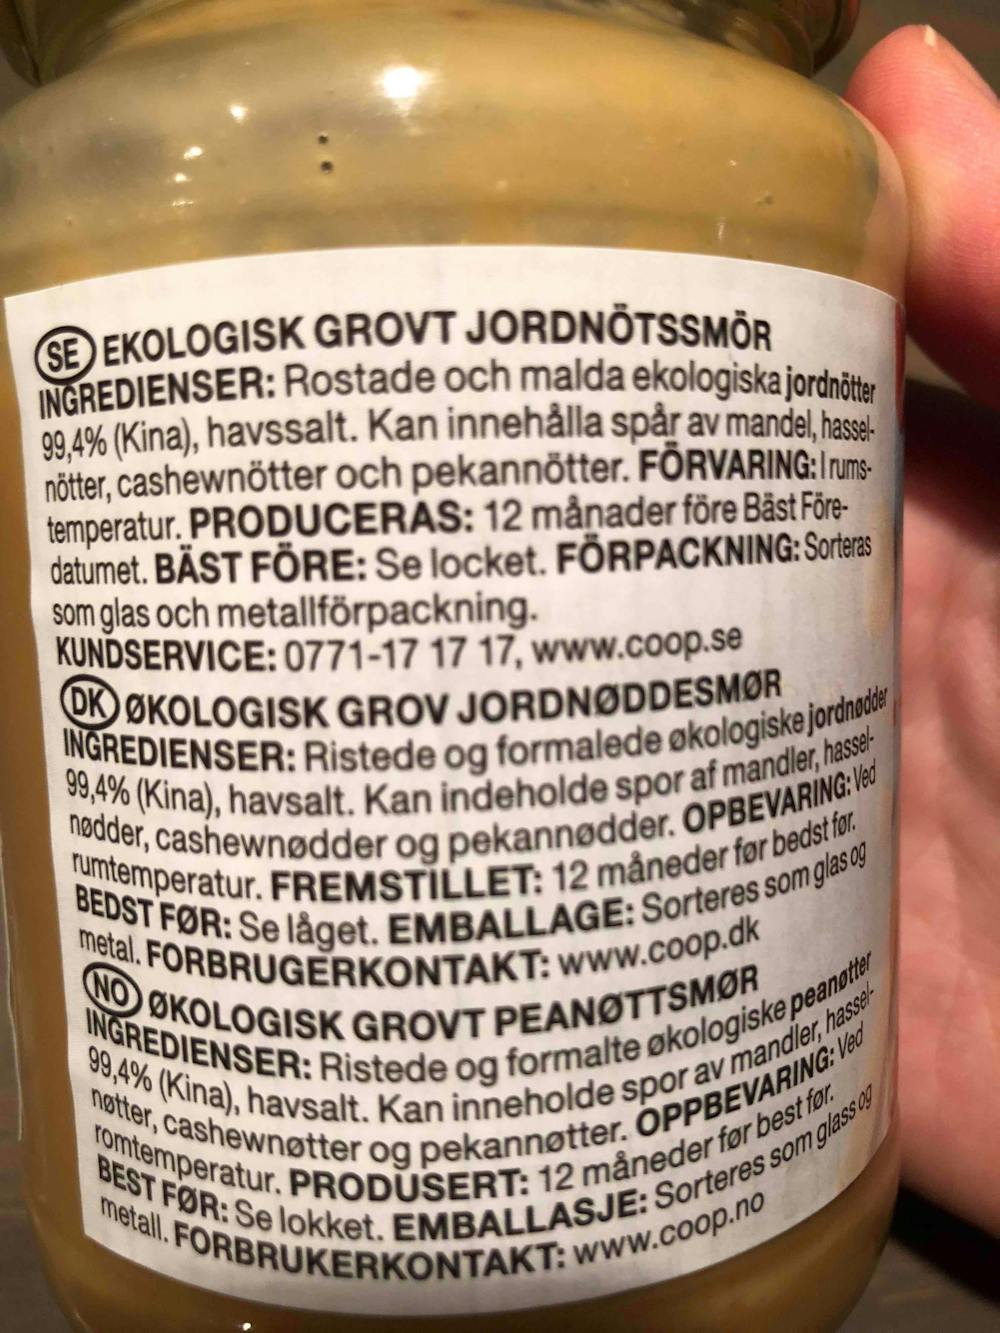 Ingredienslisten til Økologisk crunchy peanut butter, Coop Änglamark